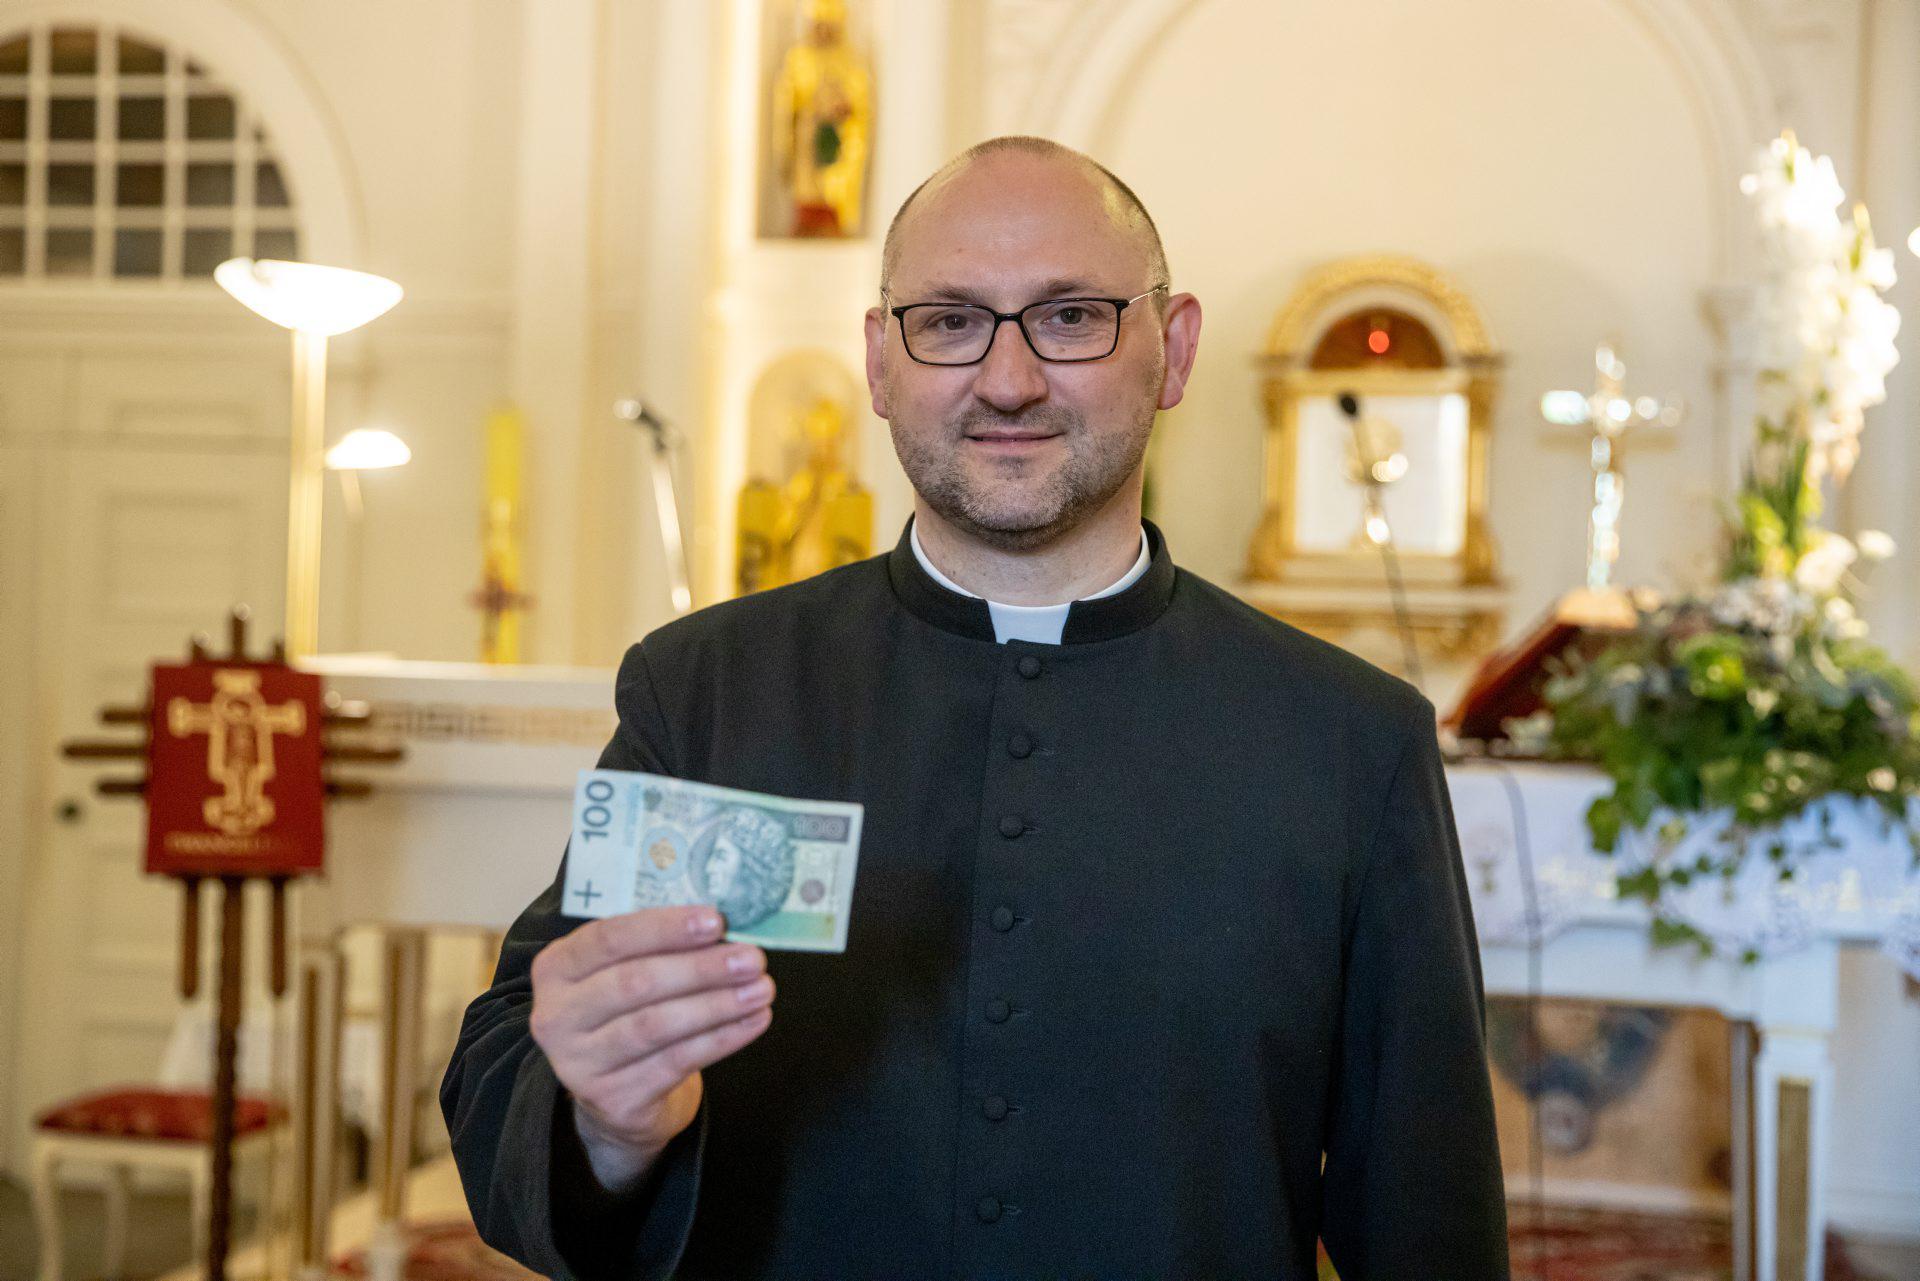 Ksiądz spod Poznania na mszy rozdaje pieniądze Poznań